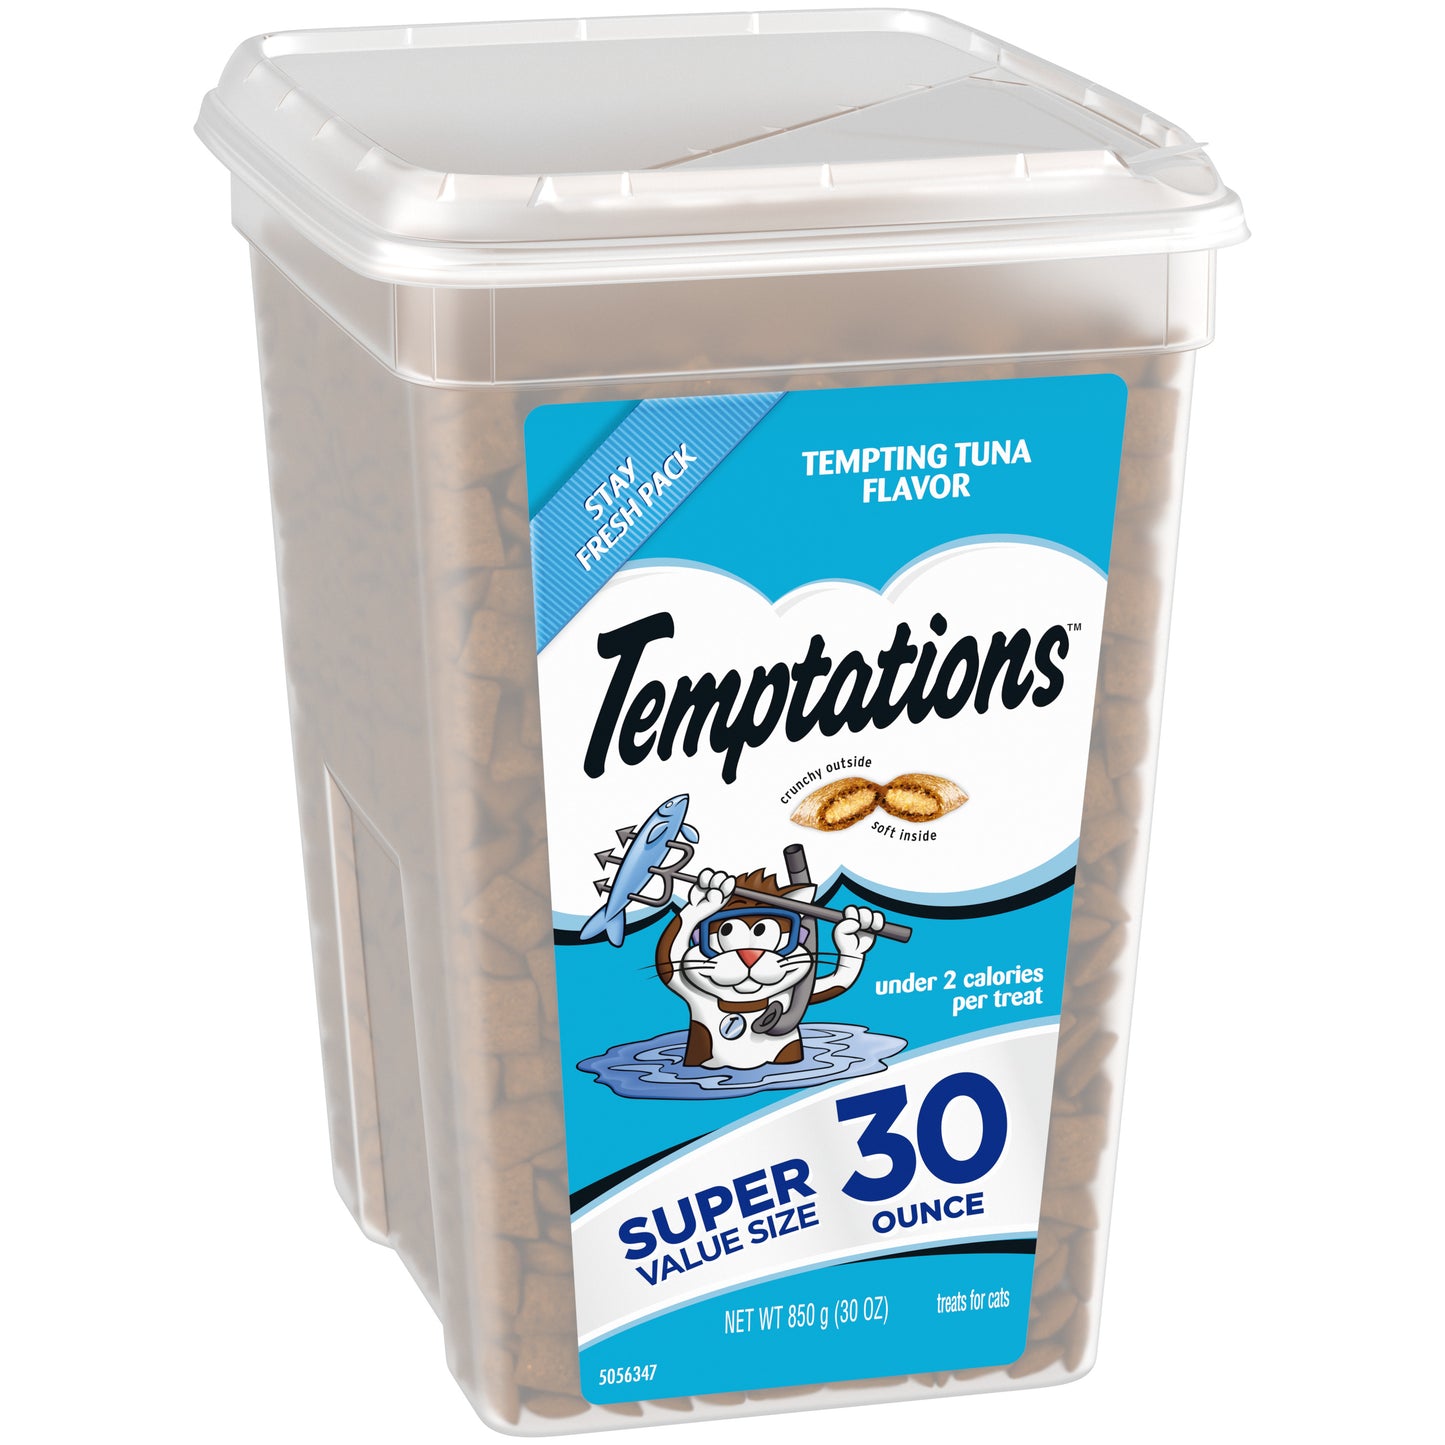 [Temptations][TEMPTATIONS Classic Cat Treats, Tempting Tuna Flavor, 30 oz. Tub][Image Center Left (3/4 Angle)]